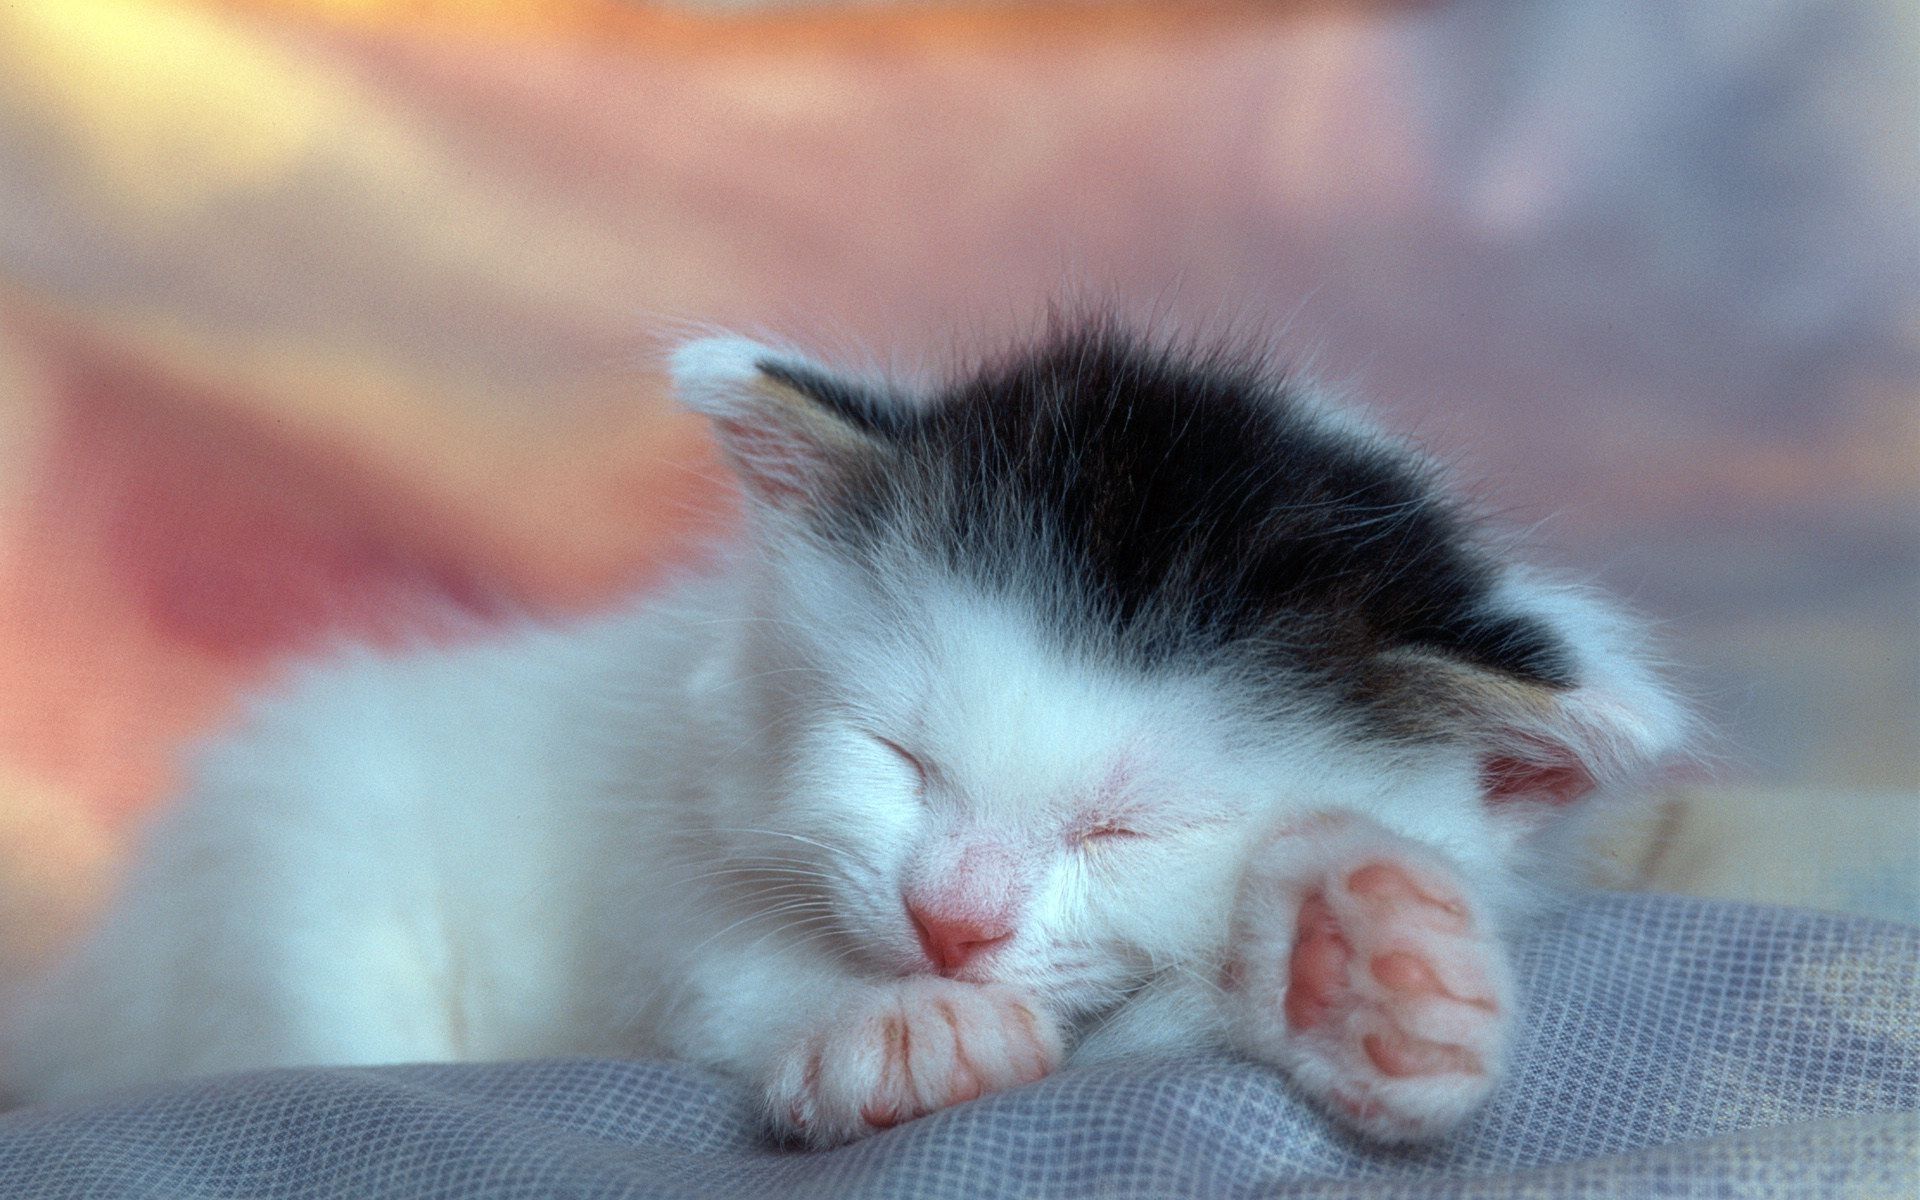 Cats, Sleepy kitten, Sleeping kitten.com